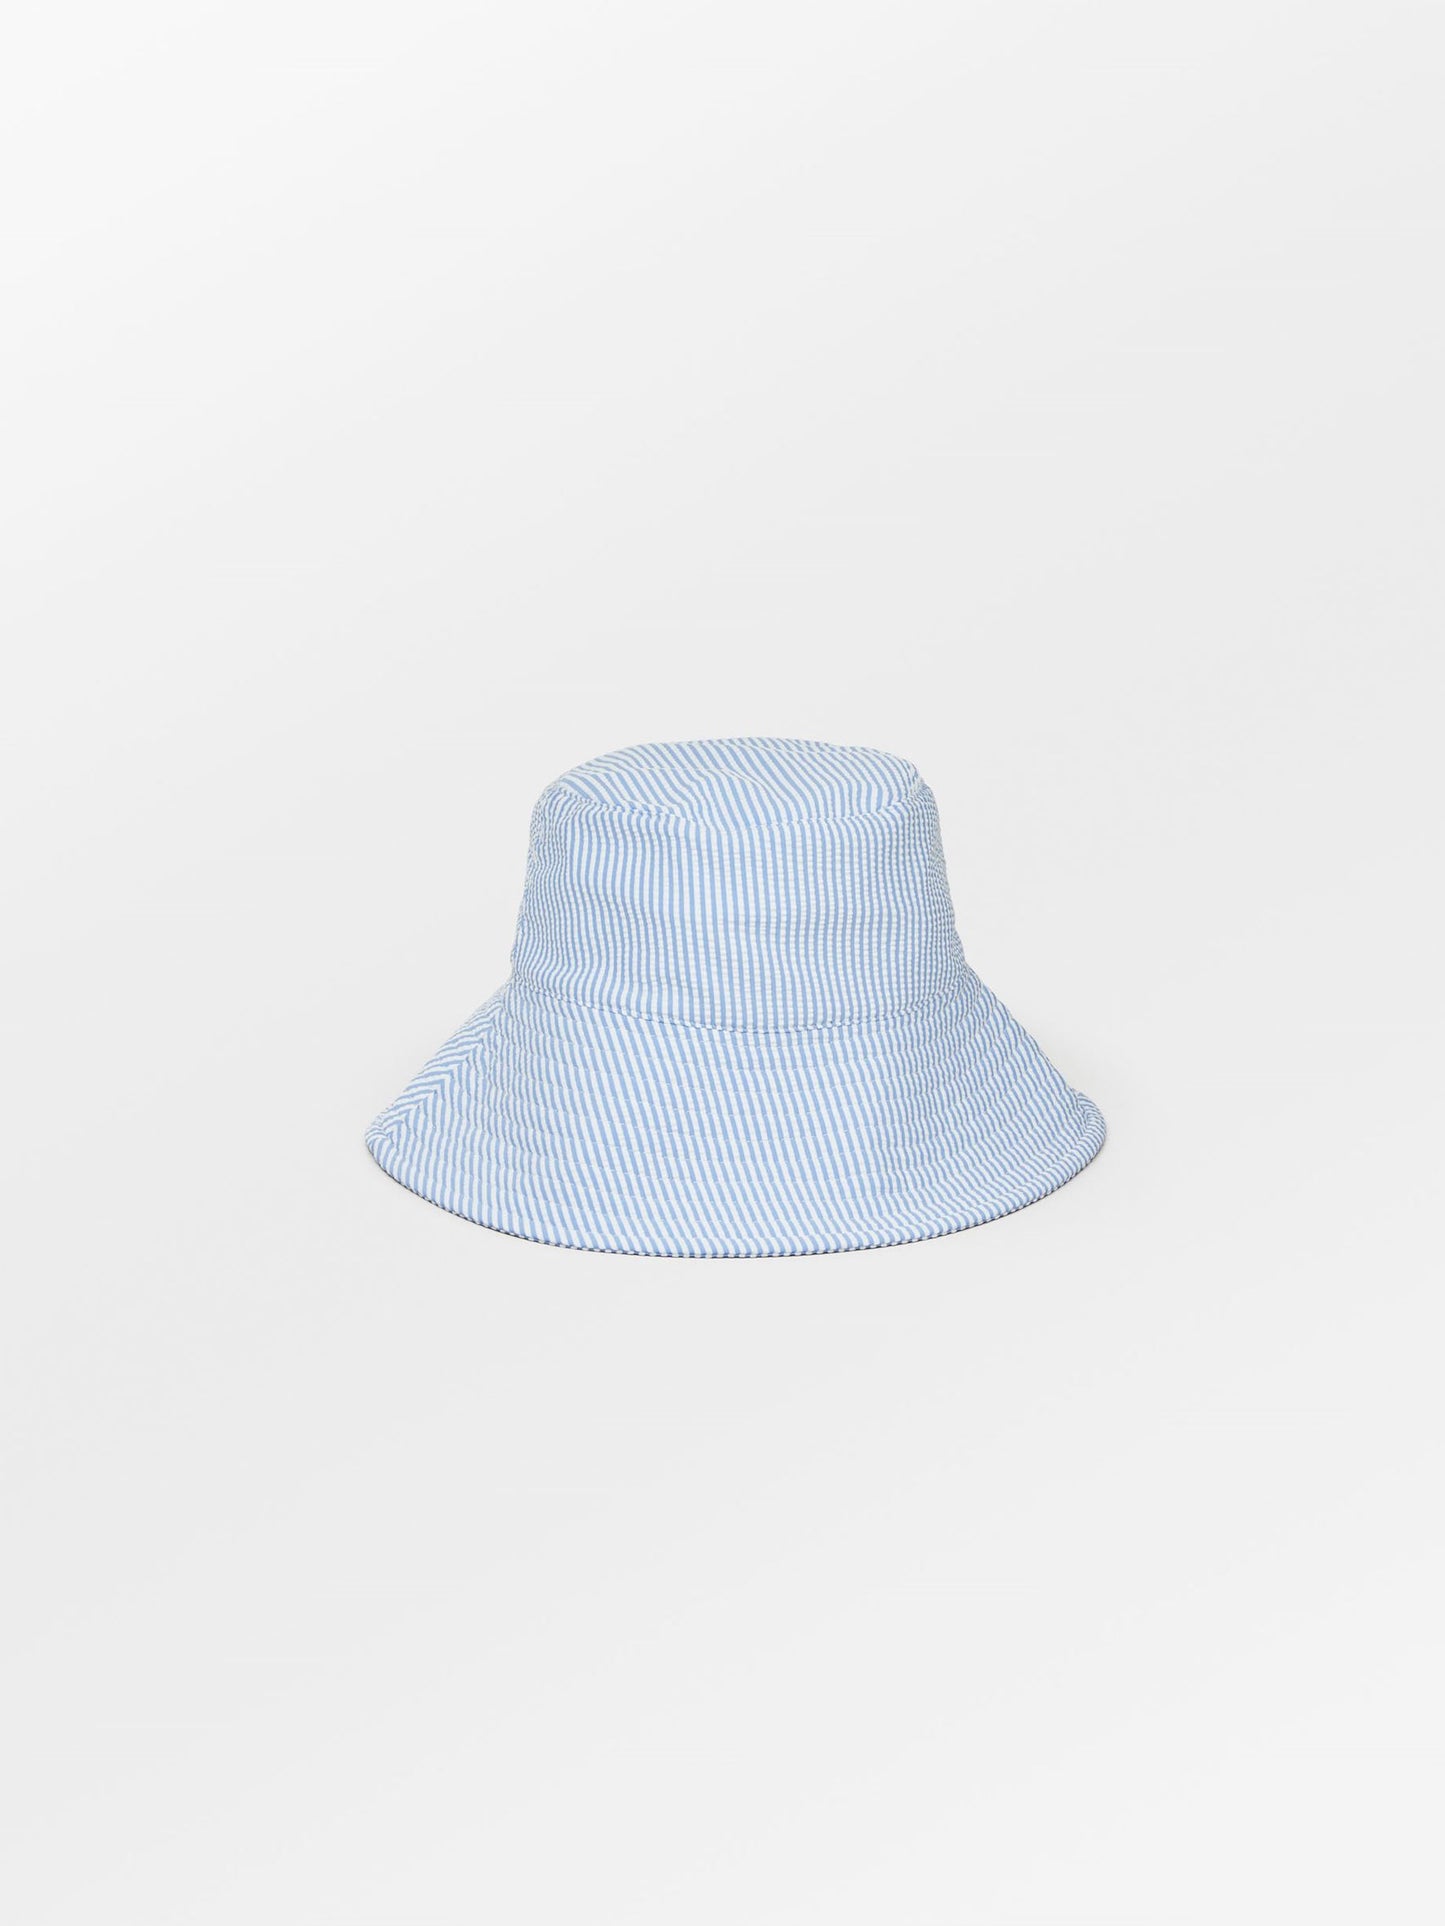 Becksöndergaard, Striba Bucket Hat - Azure Blue, sale, sale